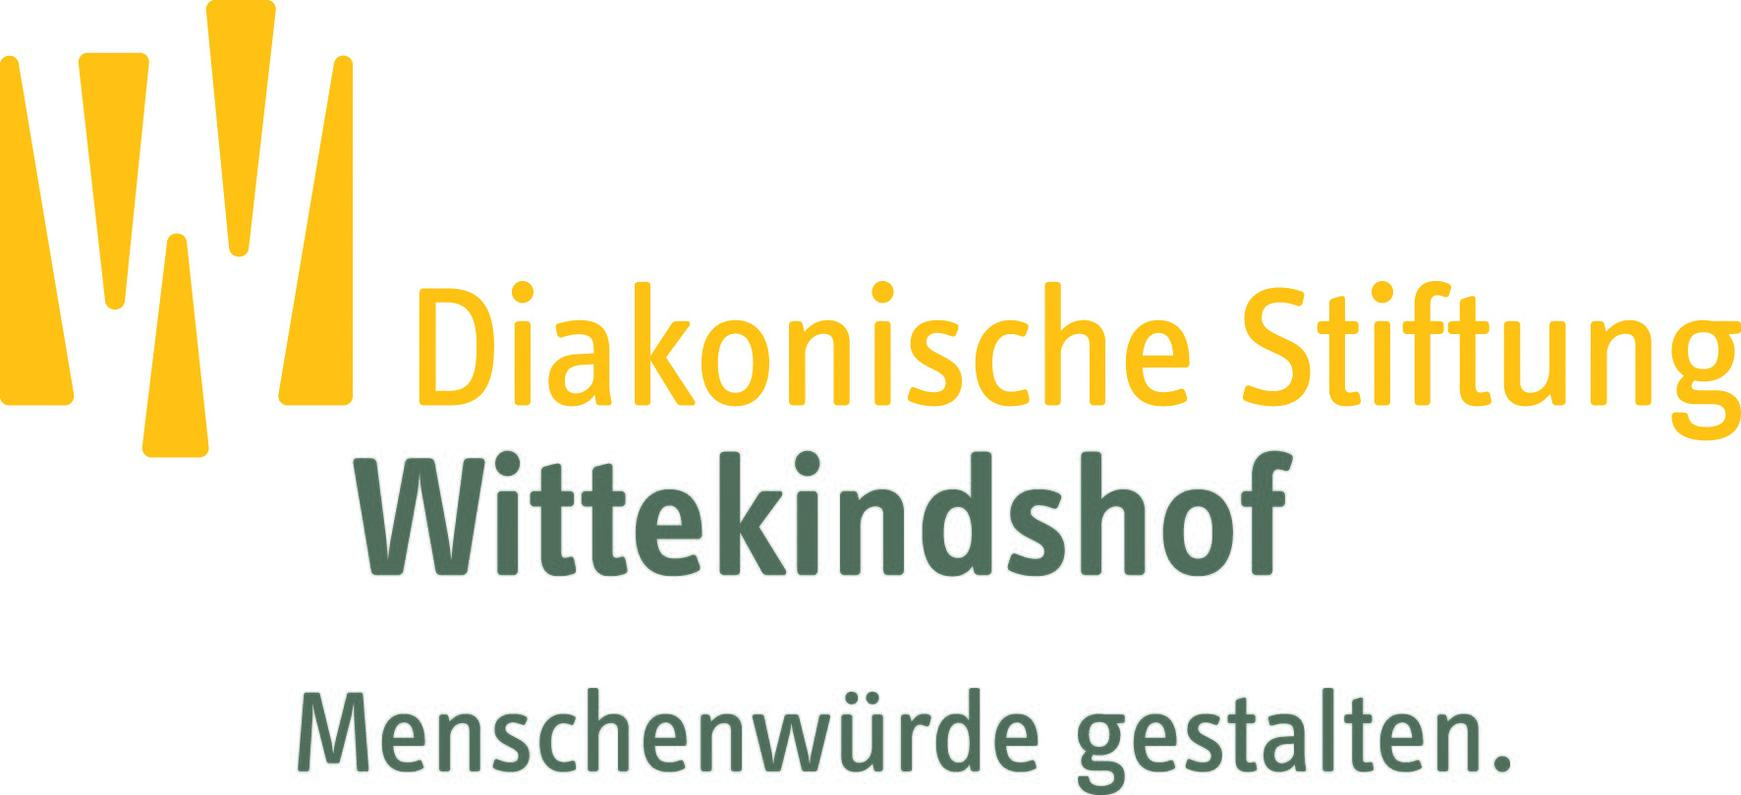 Wittekindshof - Diakonische Stiftung für Menschen mit Behinderungen